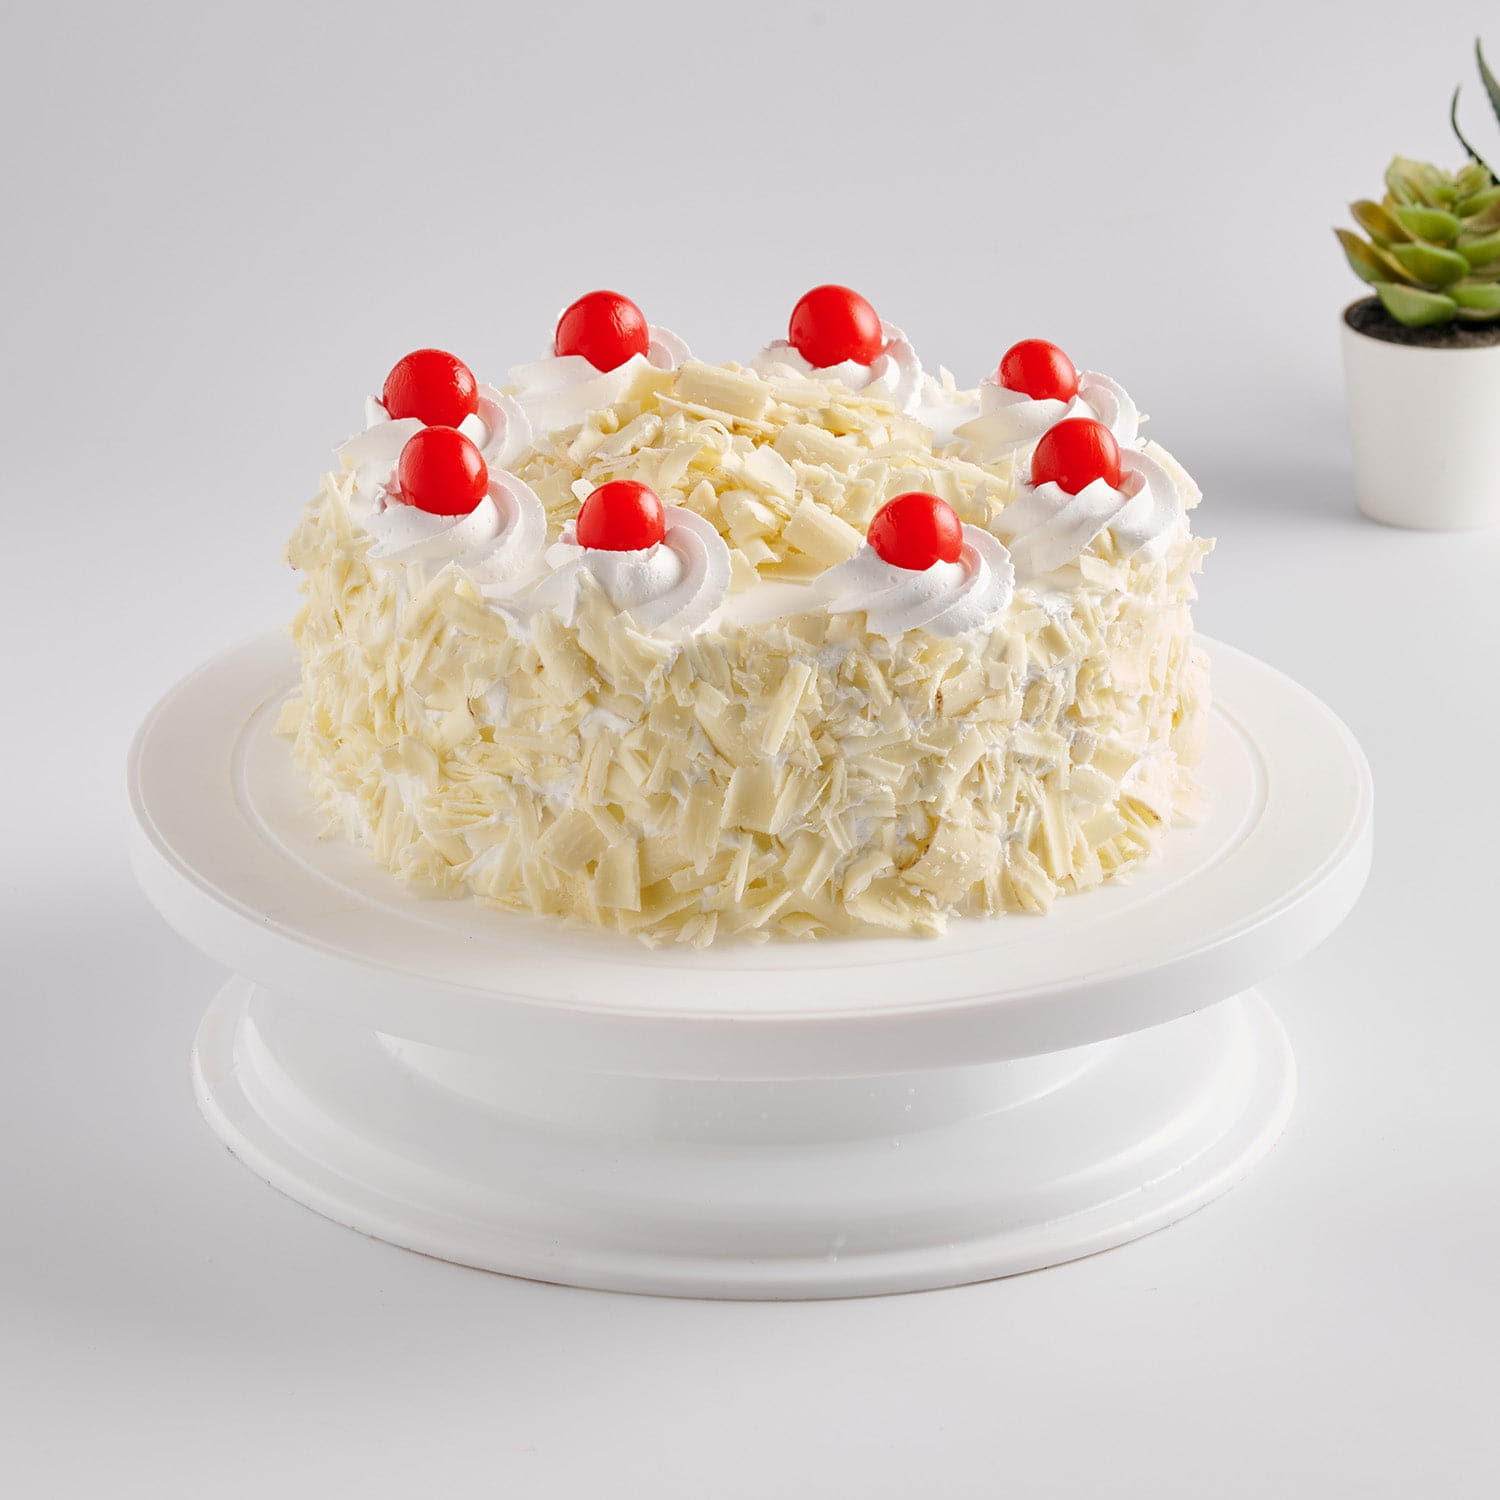 White forest cake | white forest cake design - YouTube